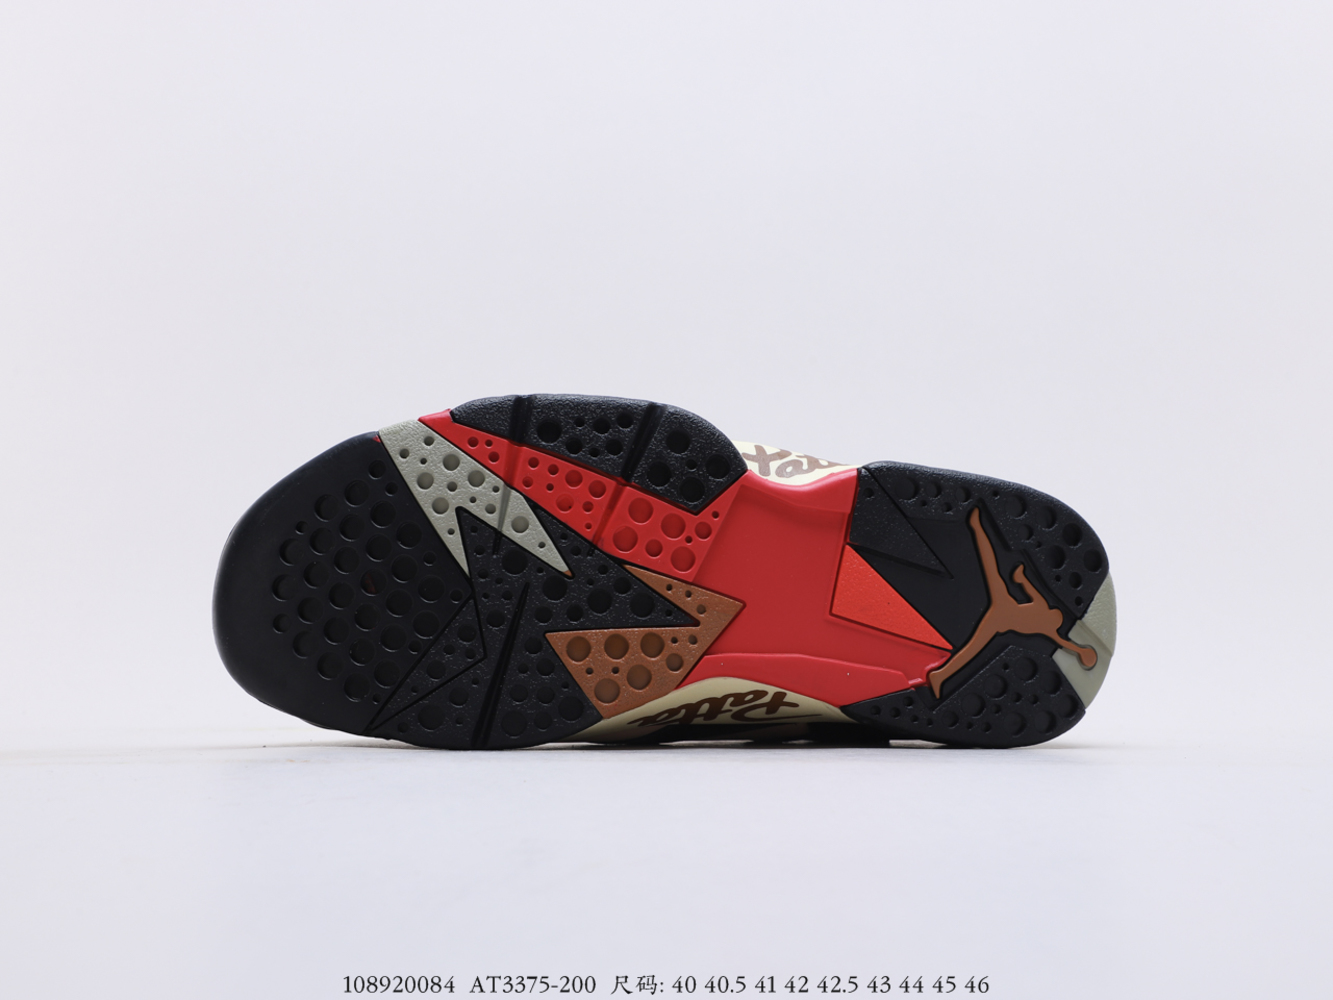 Air Jordan 7 Retro Patta Shimmer_AT3375-200